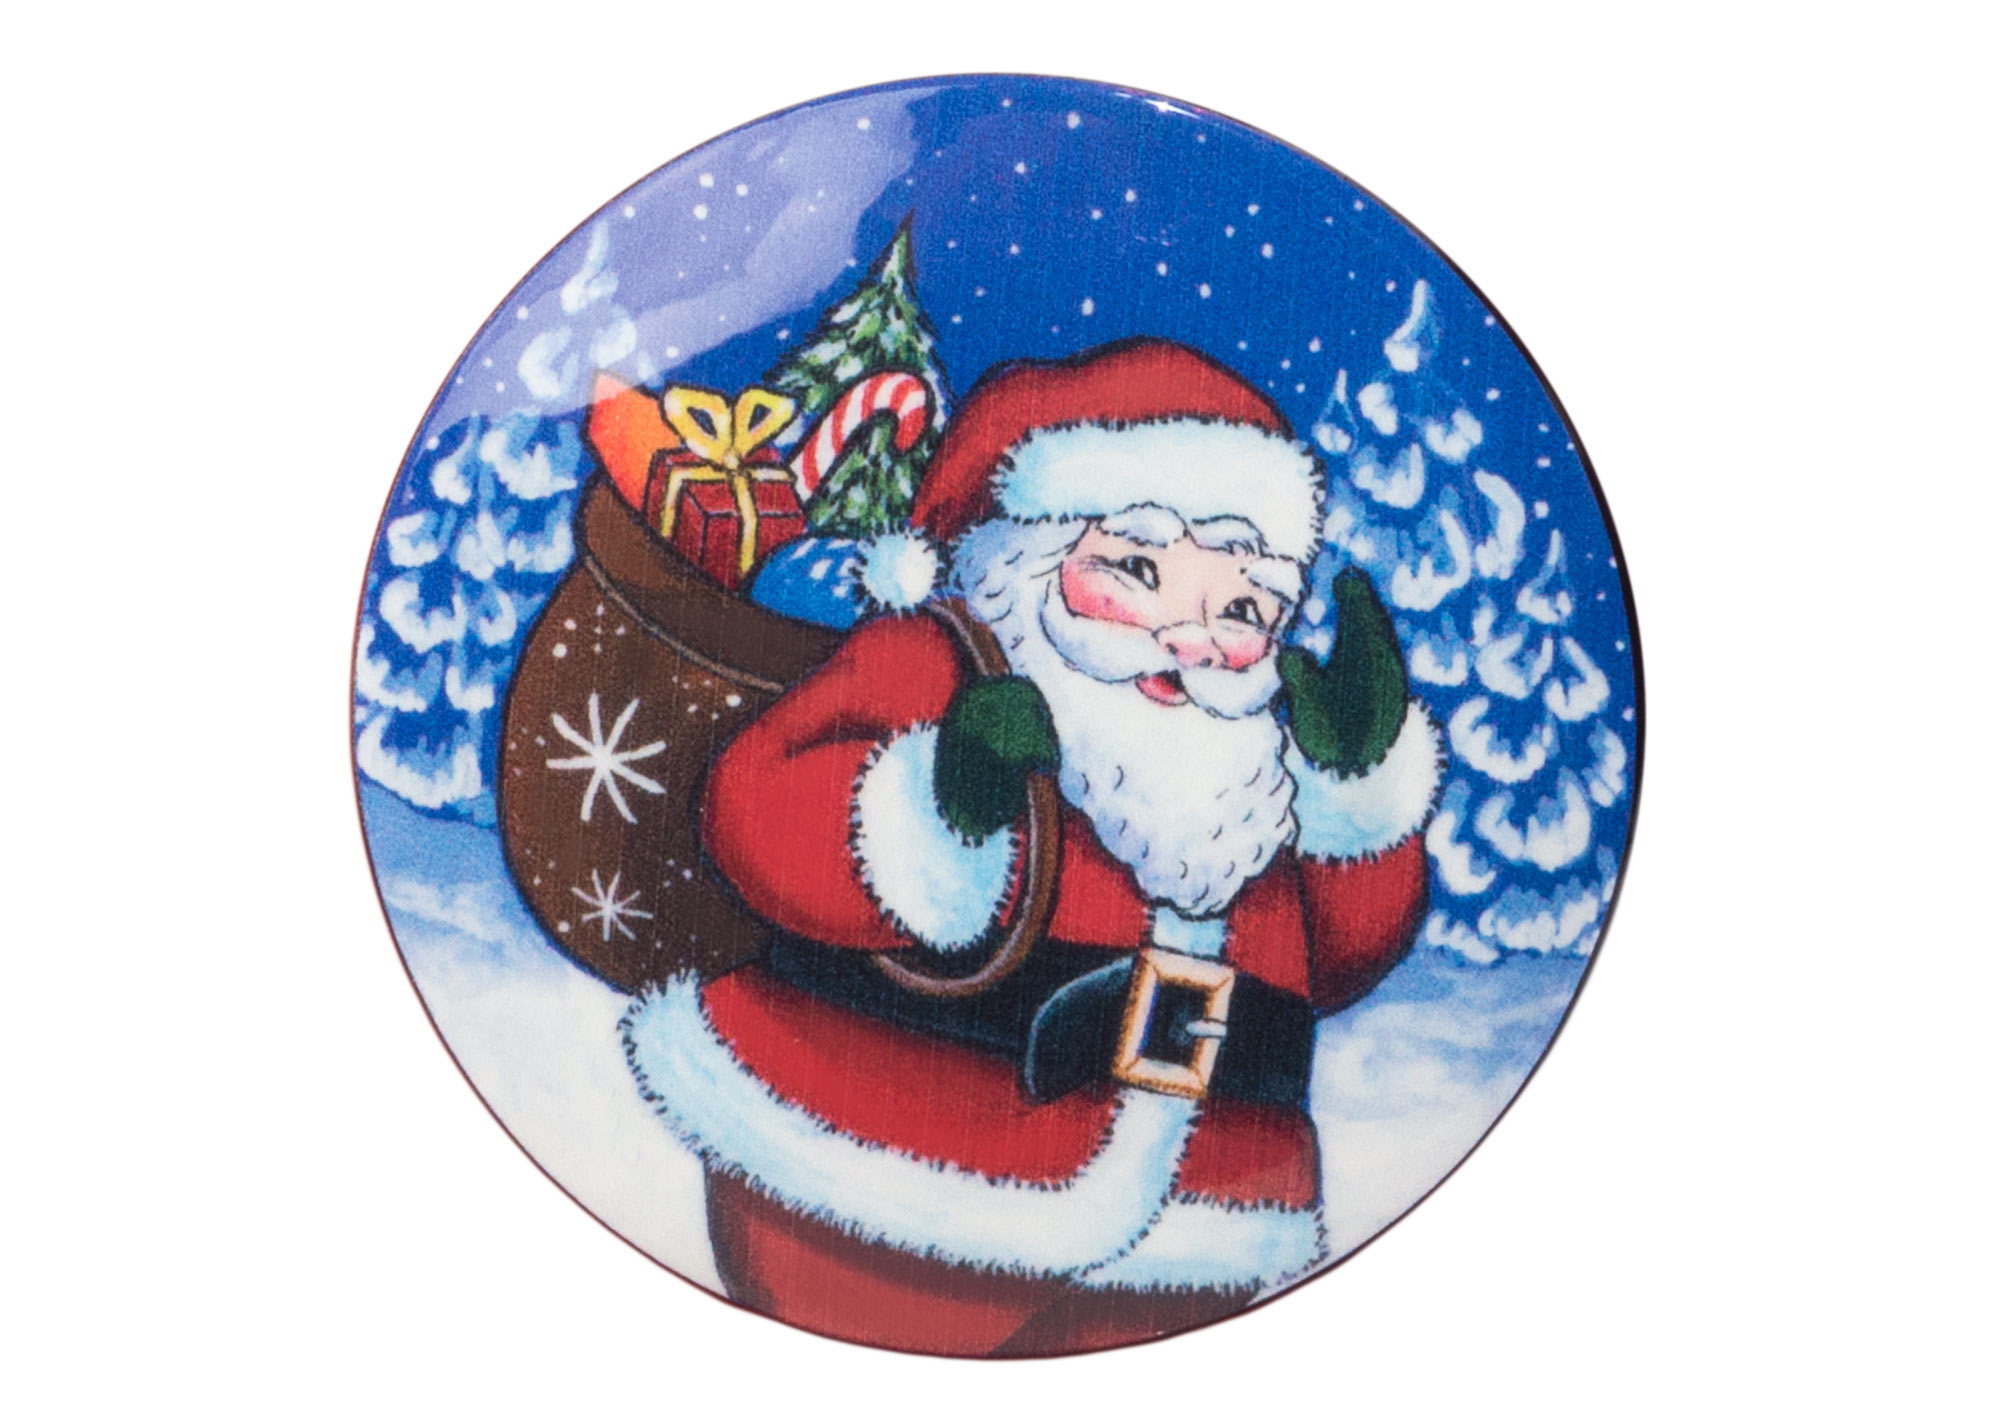 Buy Santa on the Way Brooch 2" at GoldenCockerel.com